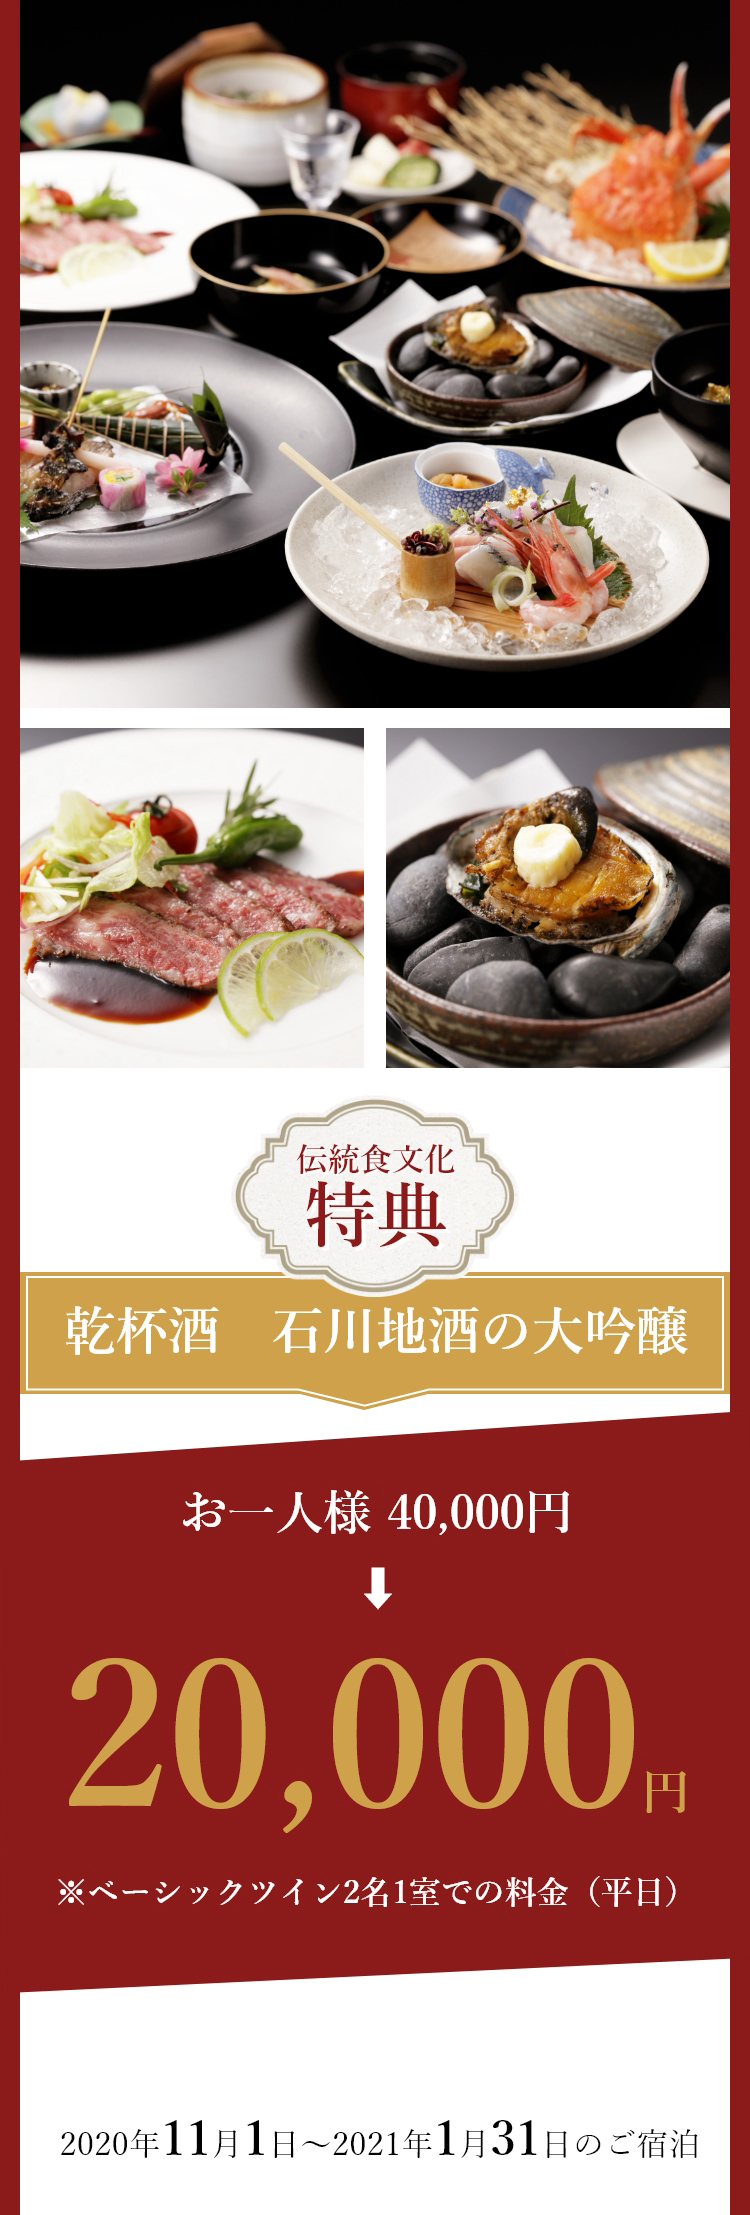 「のどぐろ・蟹・活アワビ・能登牛」など贅を極めた希少食材を一度に楽しめる会席をご用意いたします。金沢の四季の味わいもご堪能くださいませ。